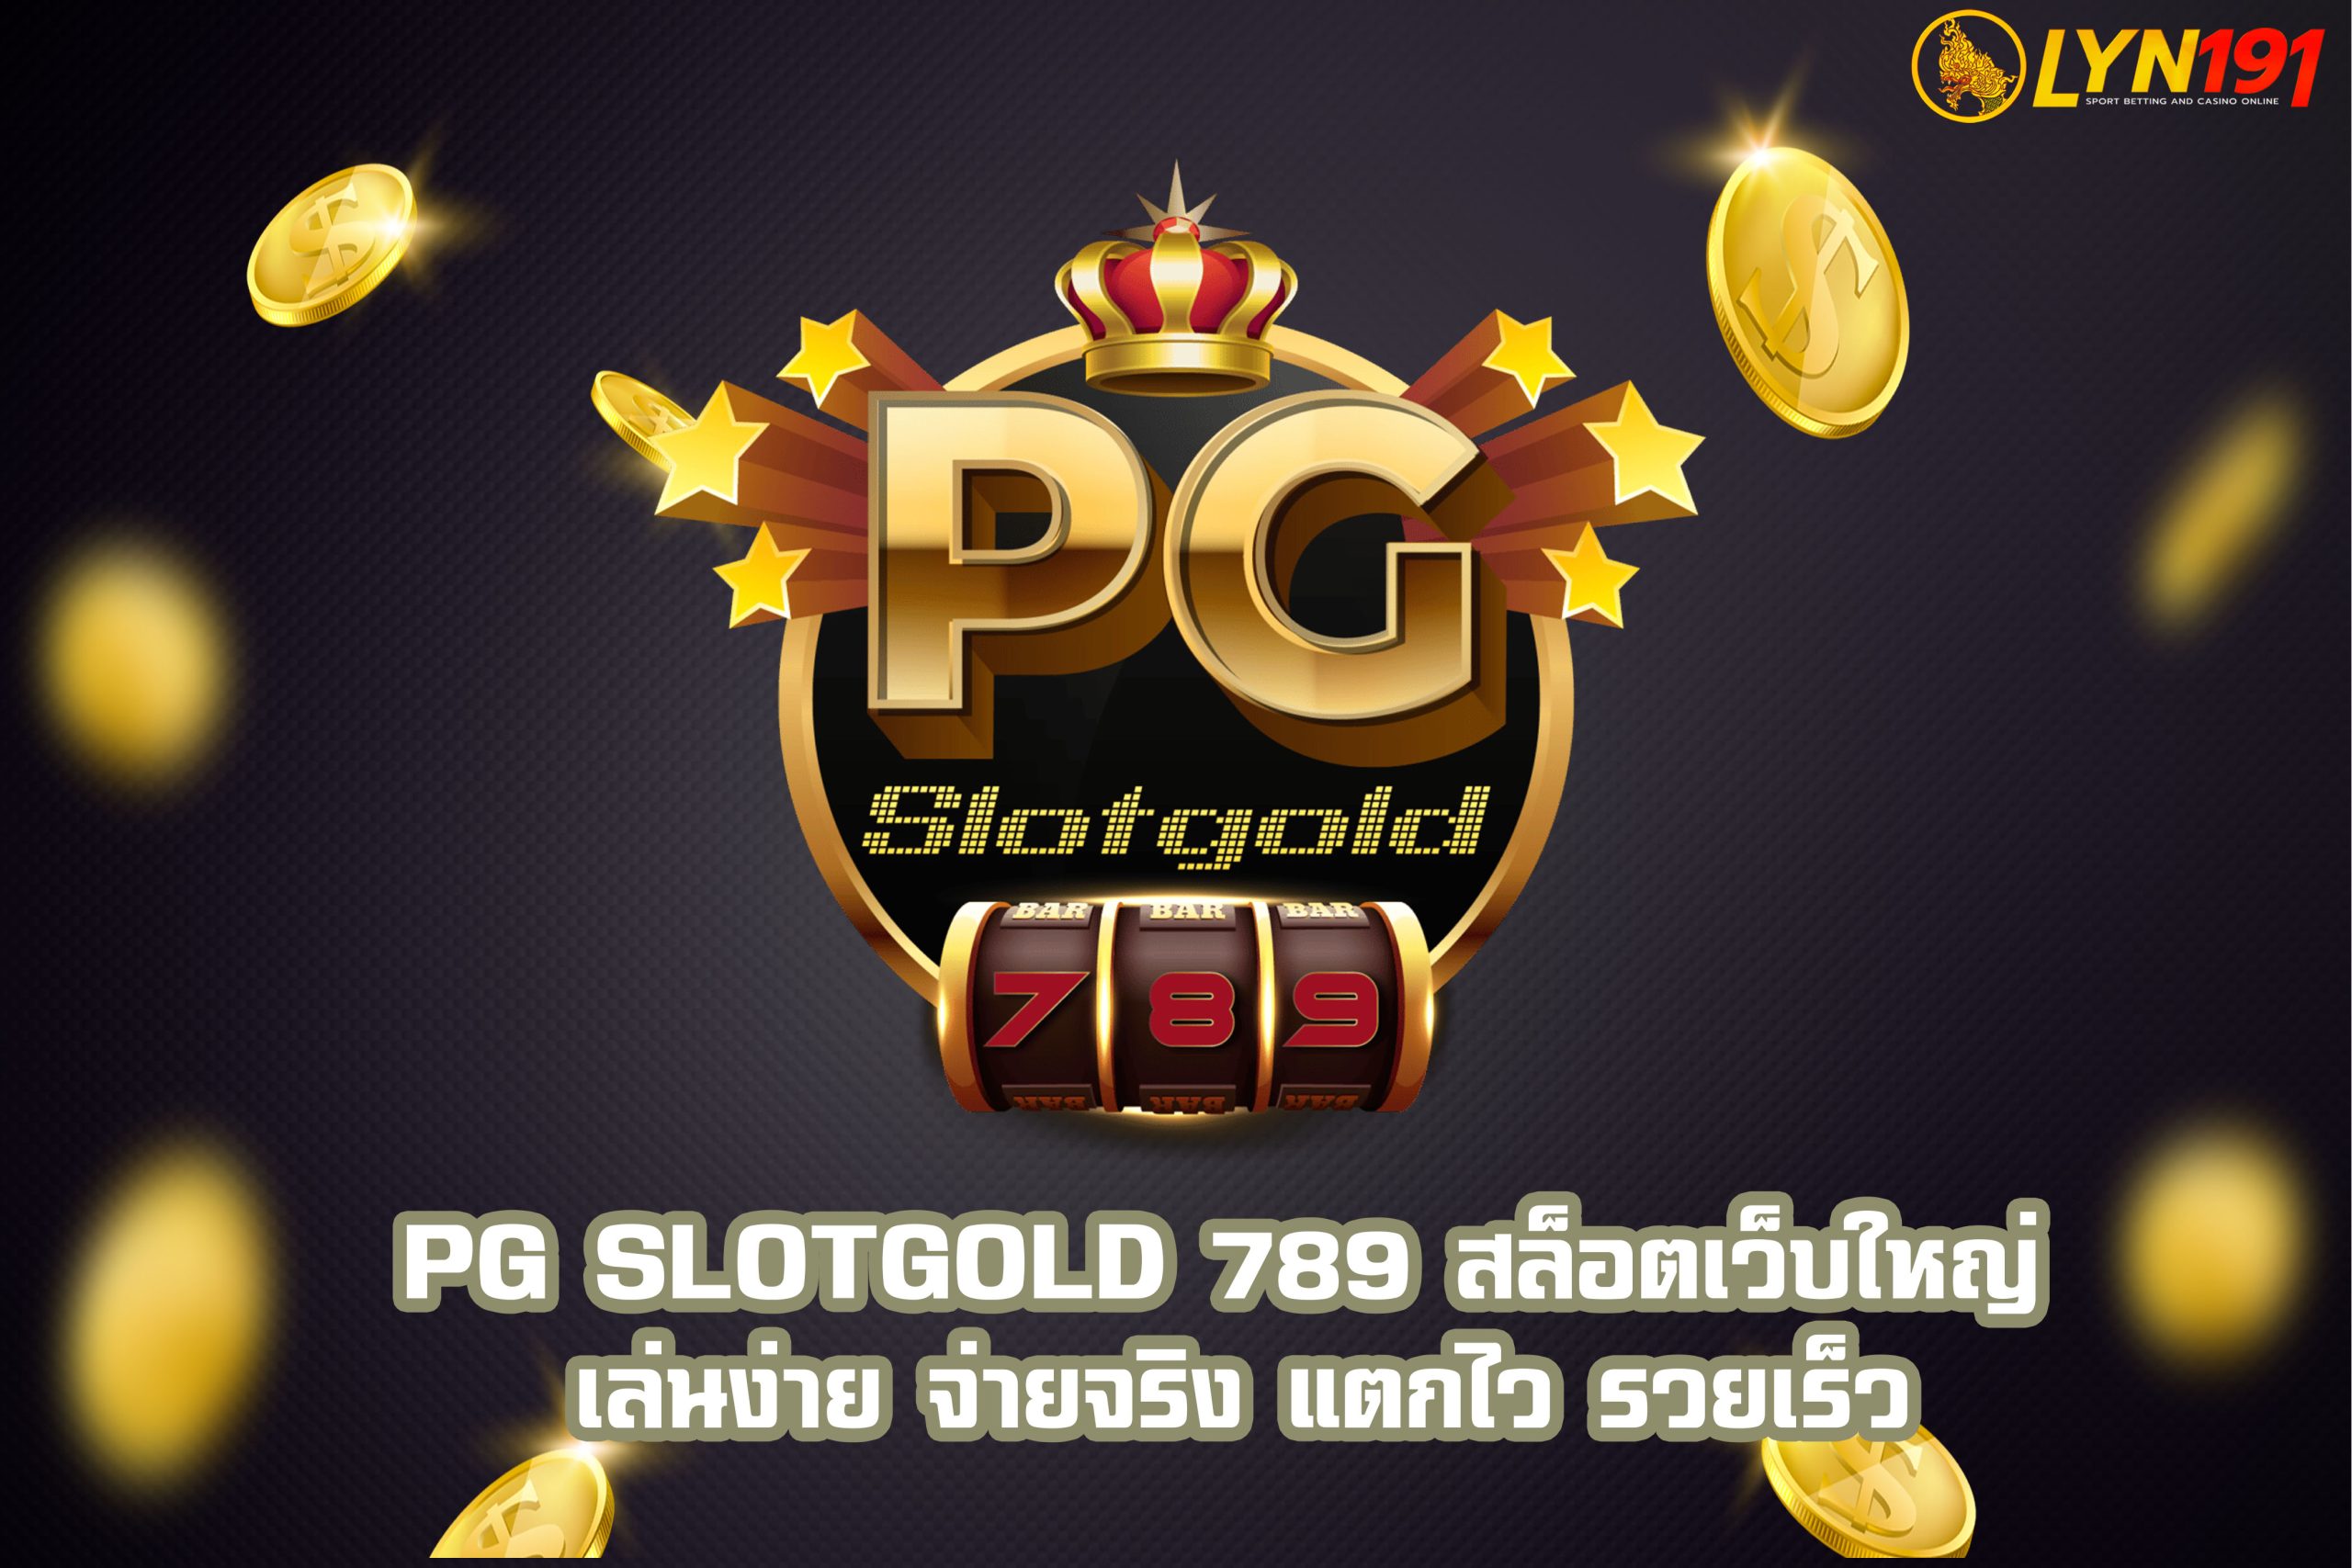 PG Slotgold 789